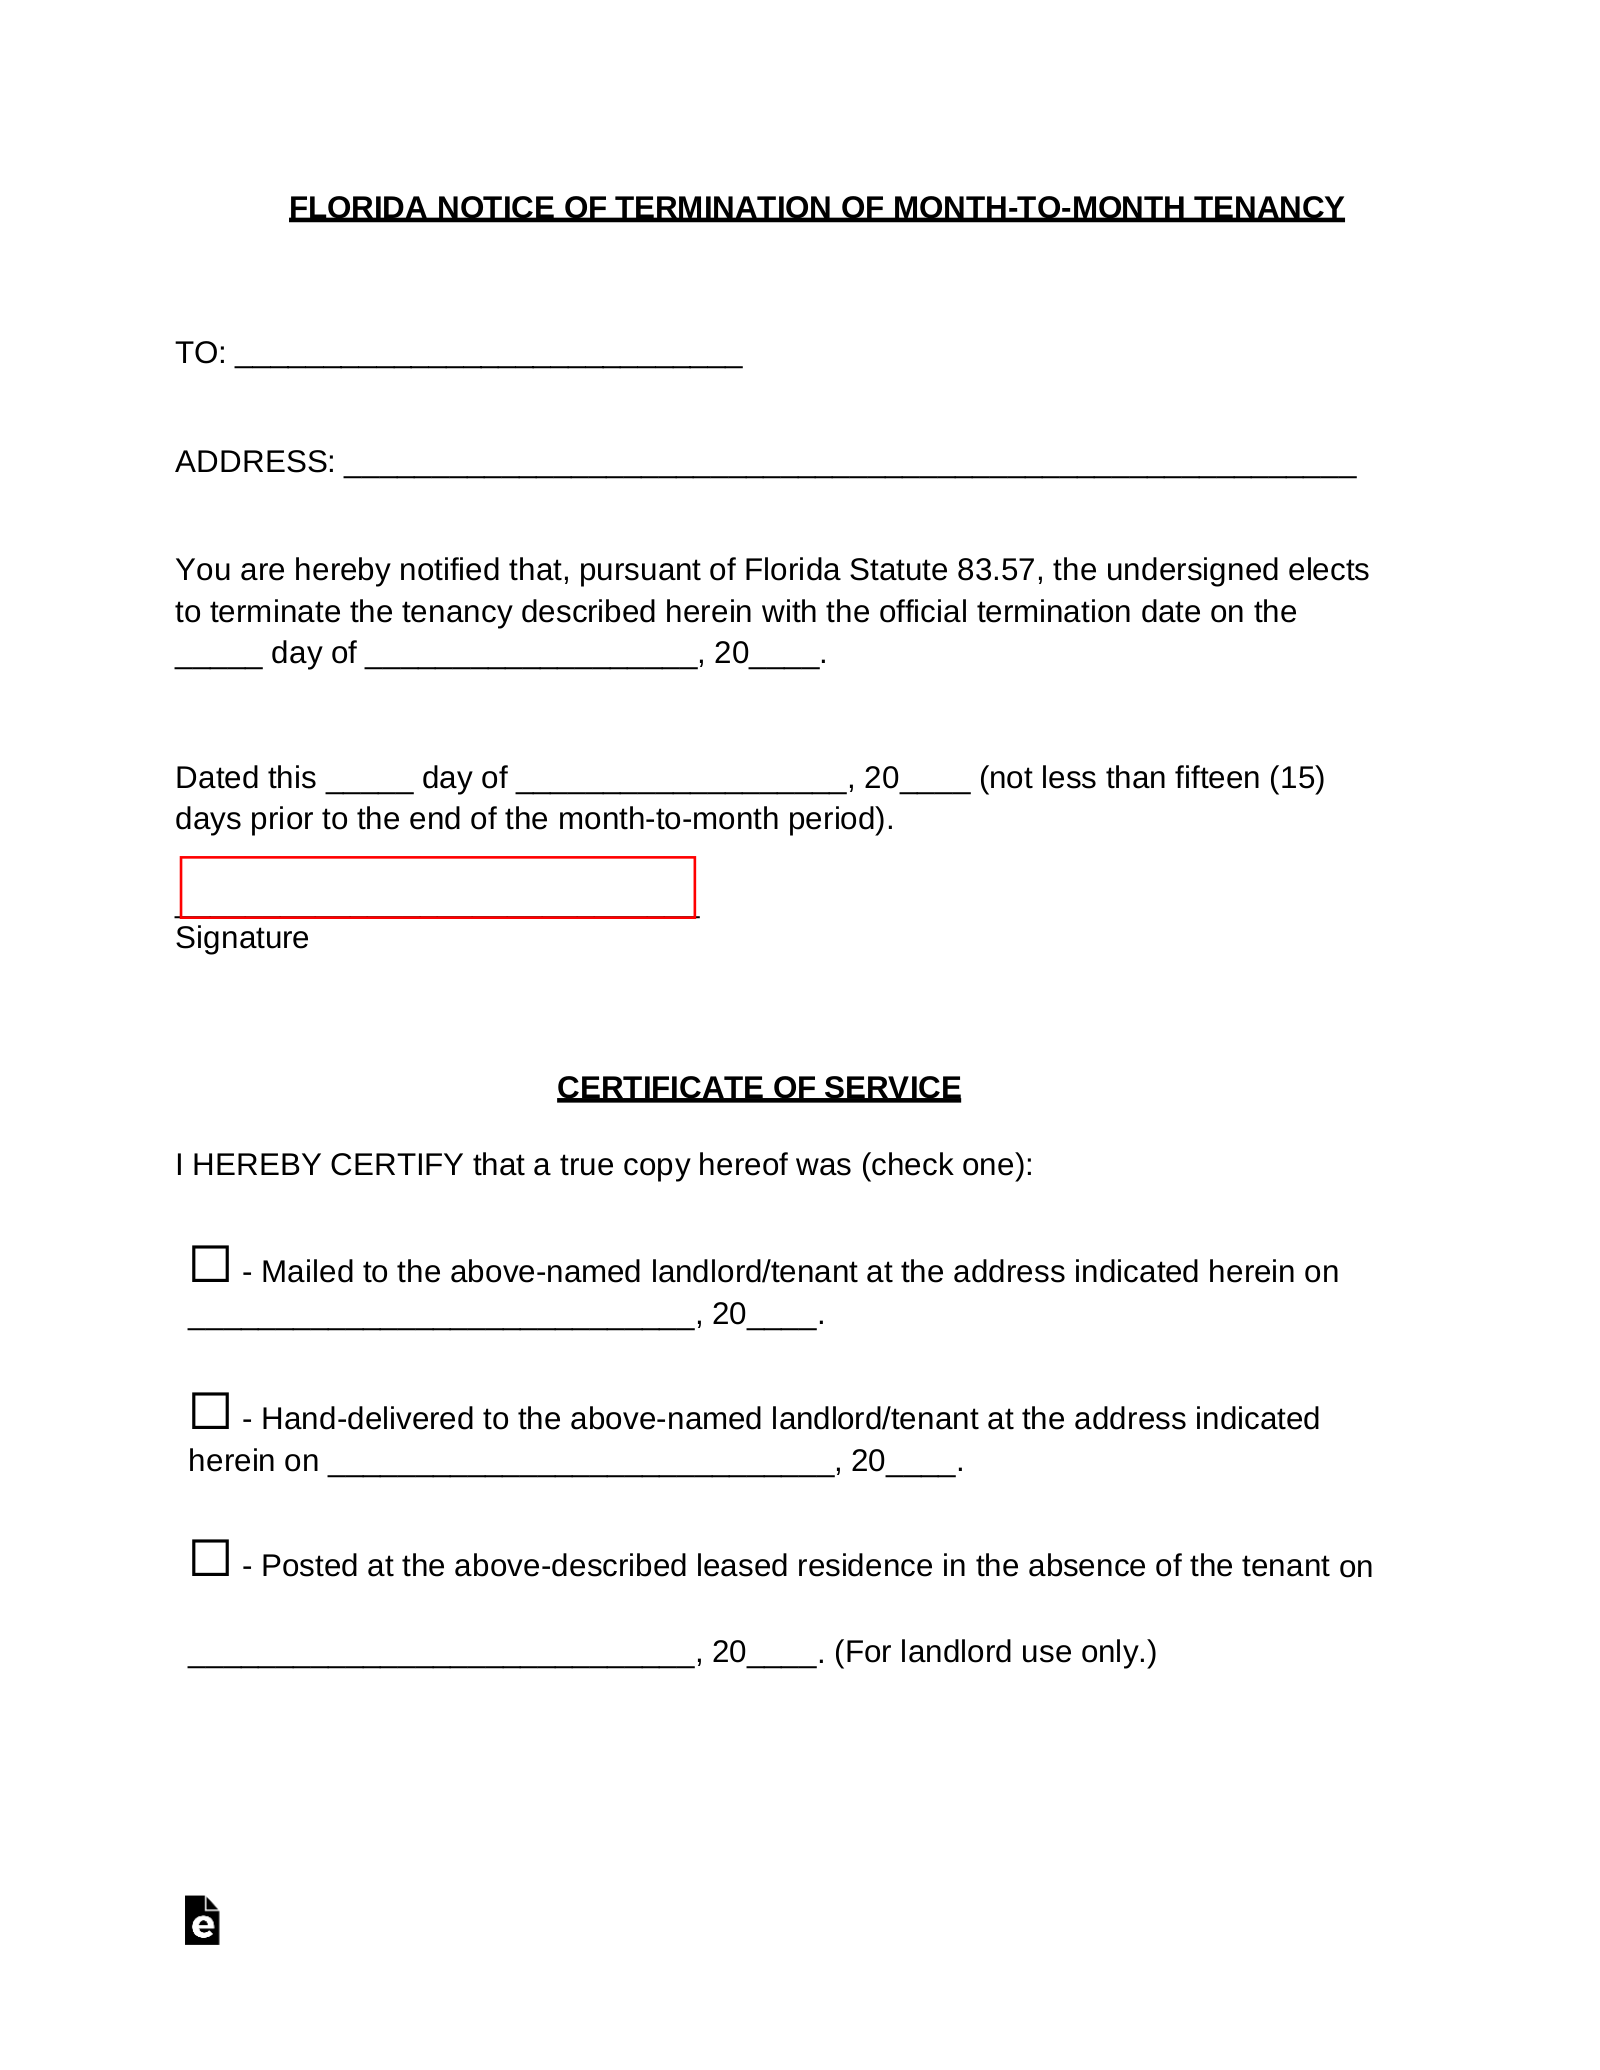 Sample Rental Agreement Letter from eforms.com